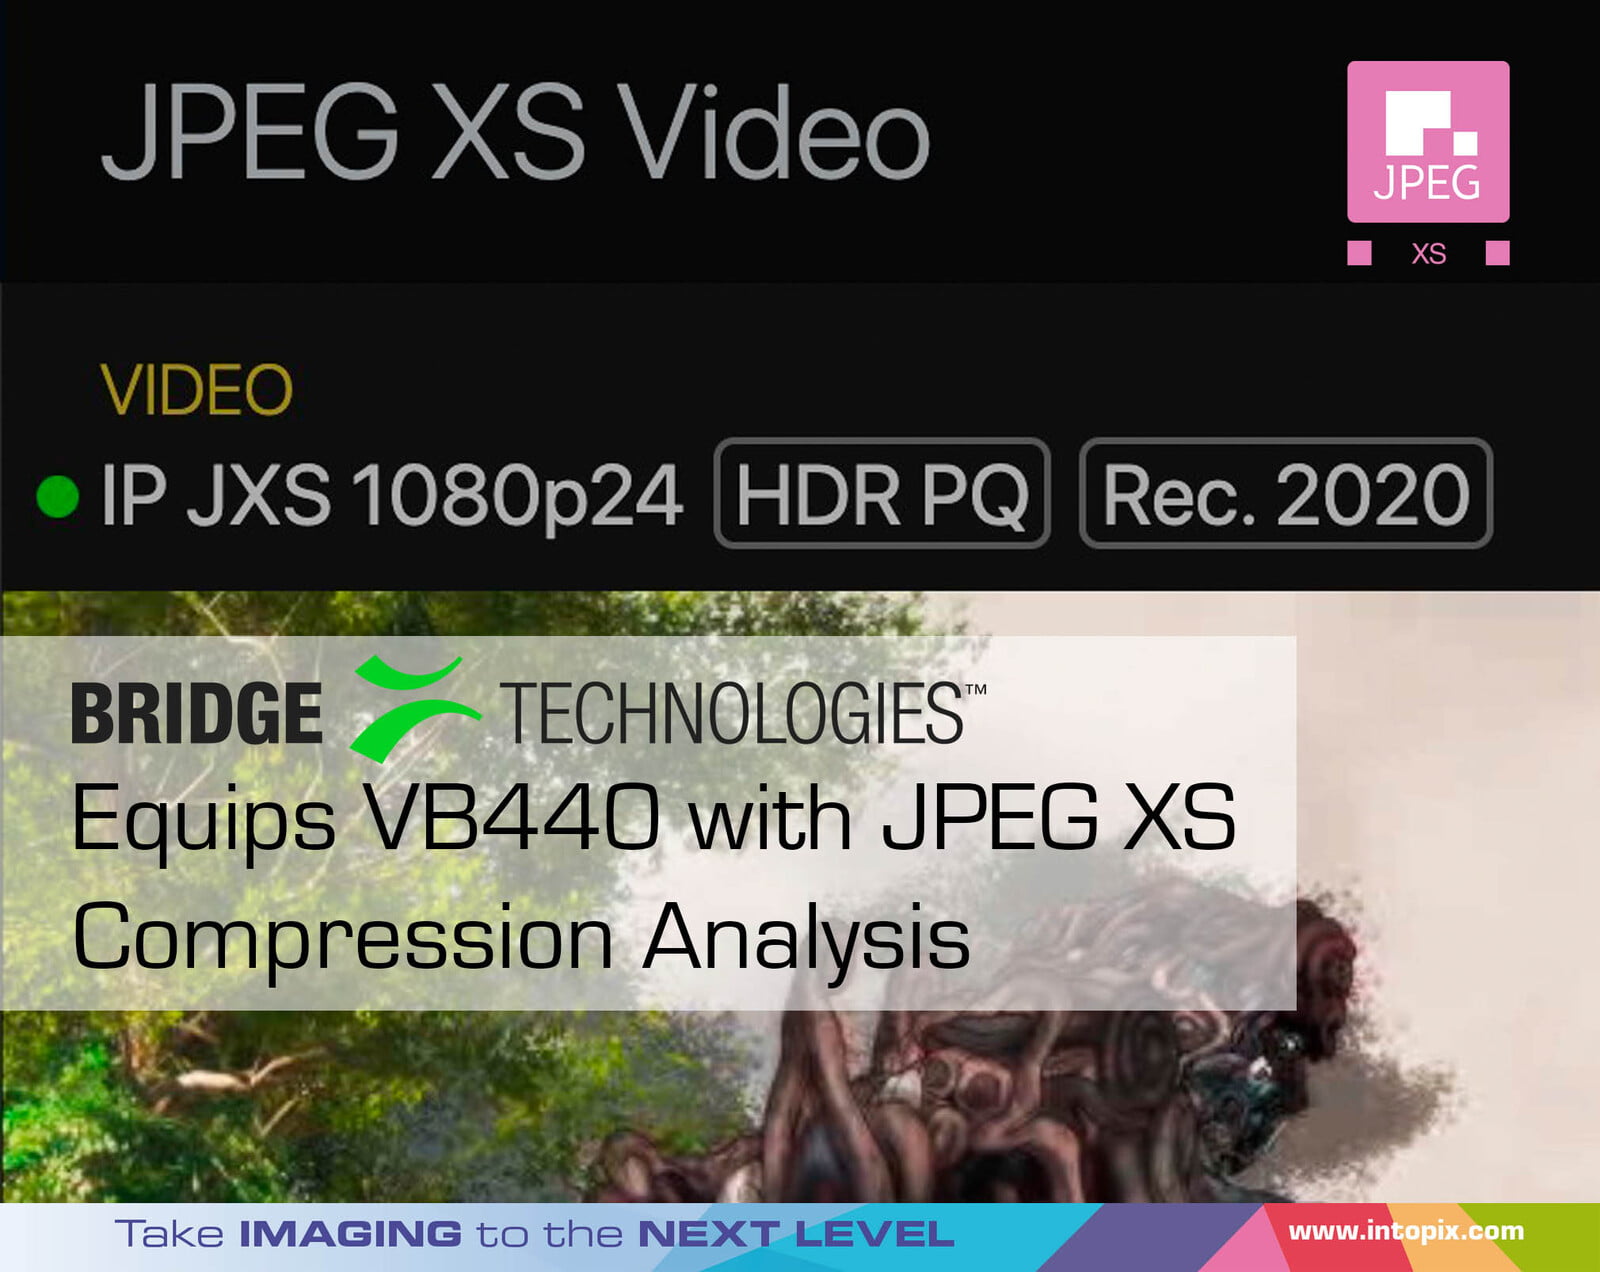 橋樑技術為VB440配備 JPEG XS壓縮分析 